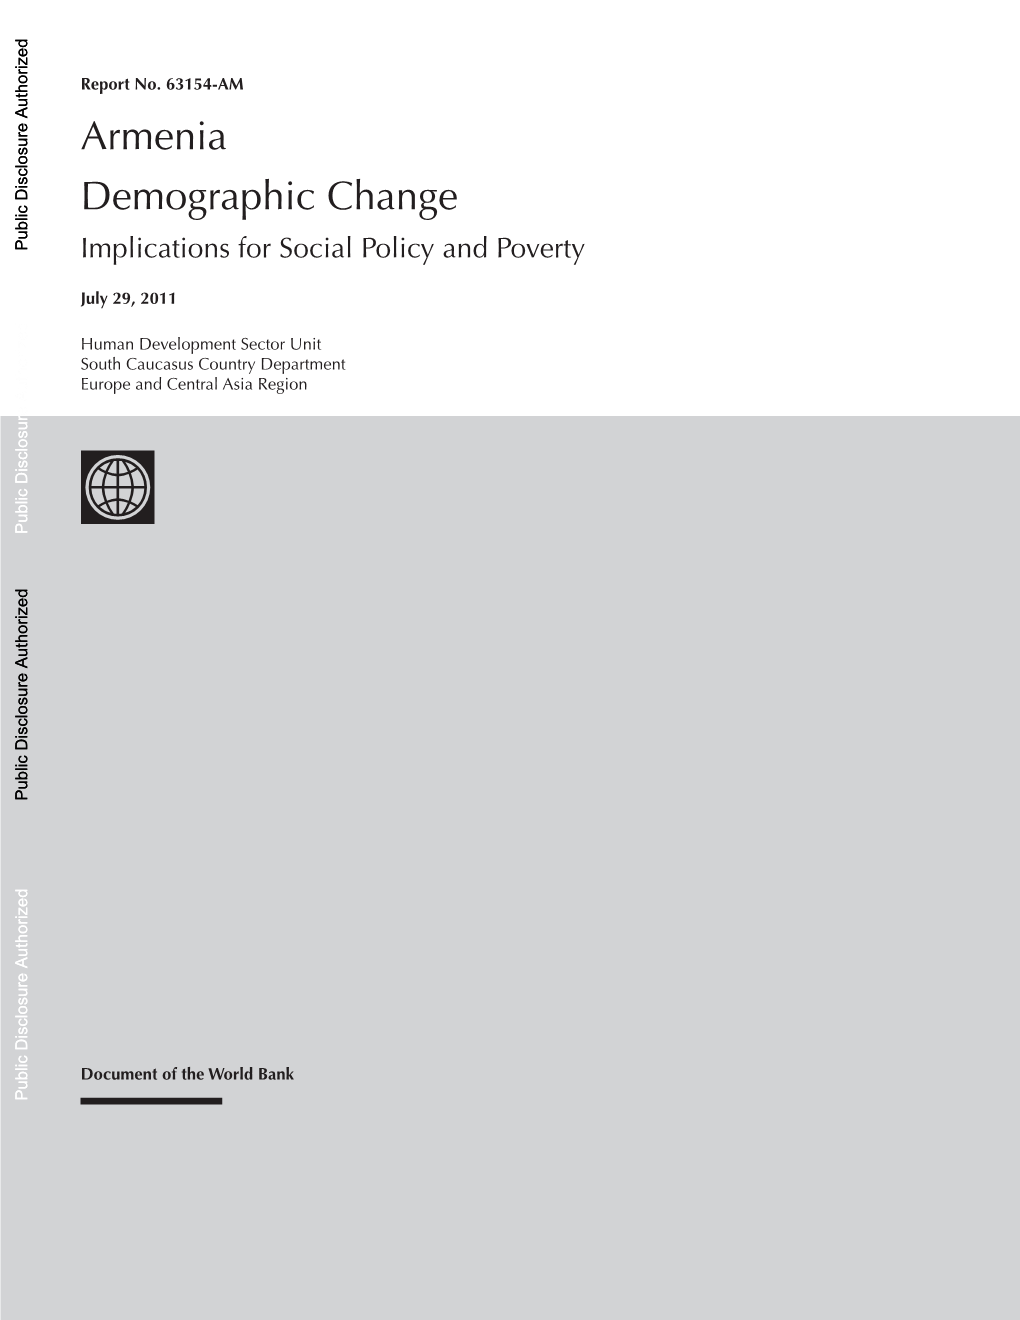 II. Demographic Trends